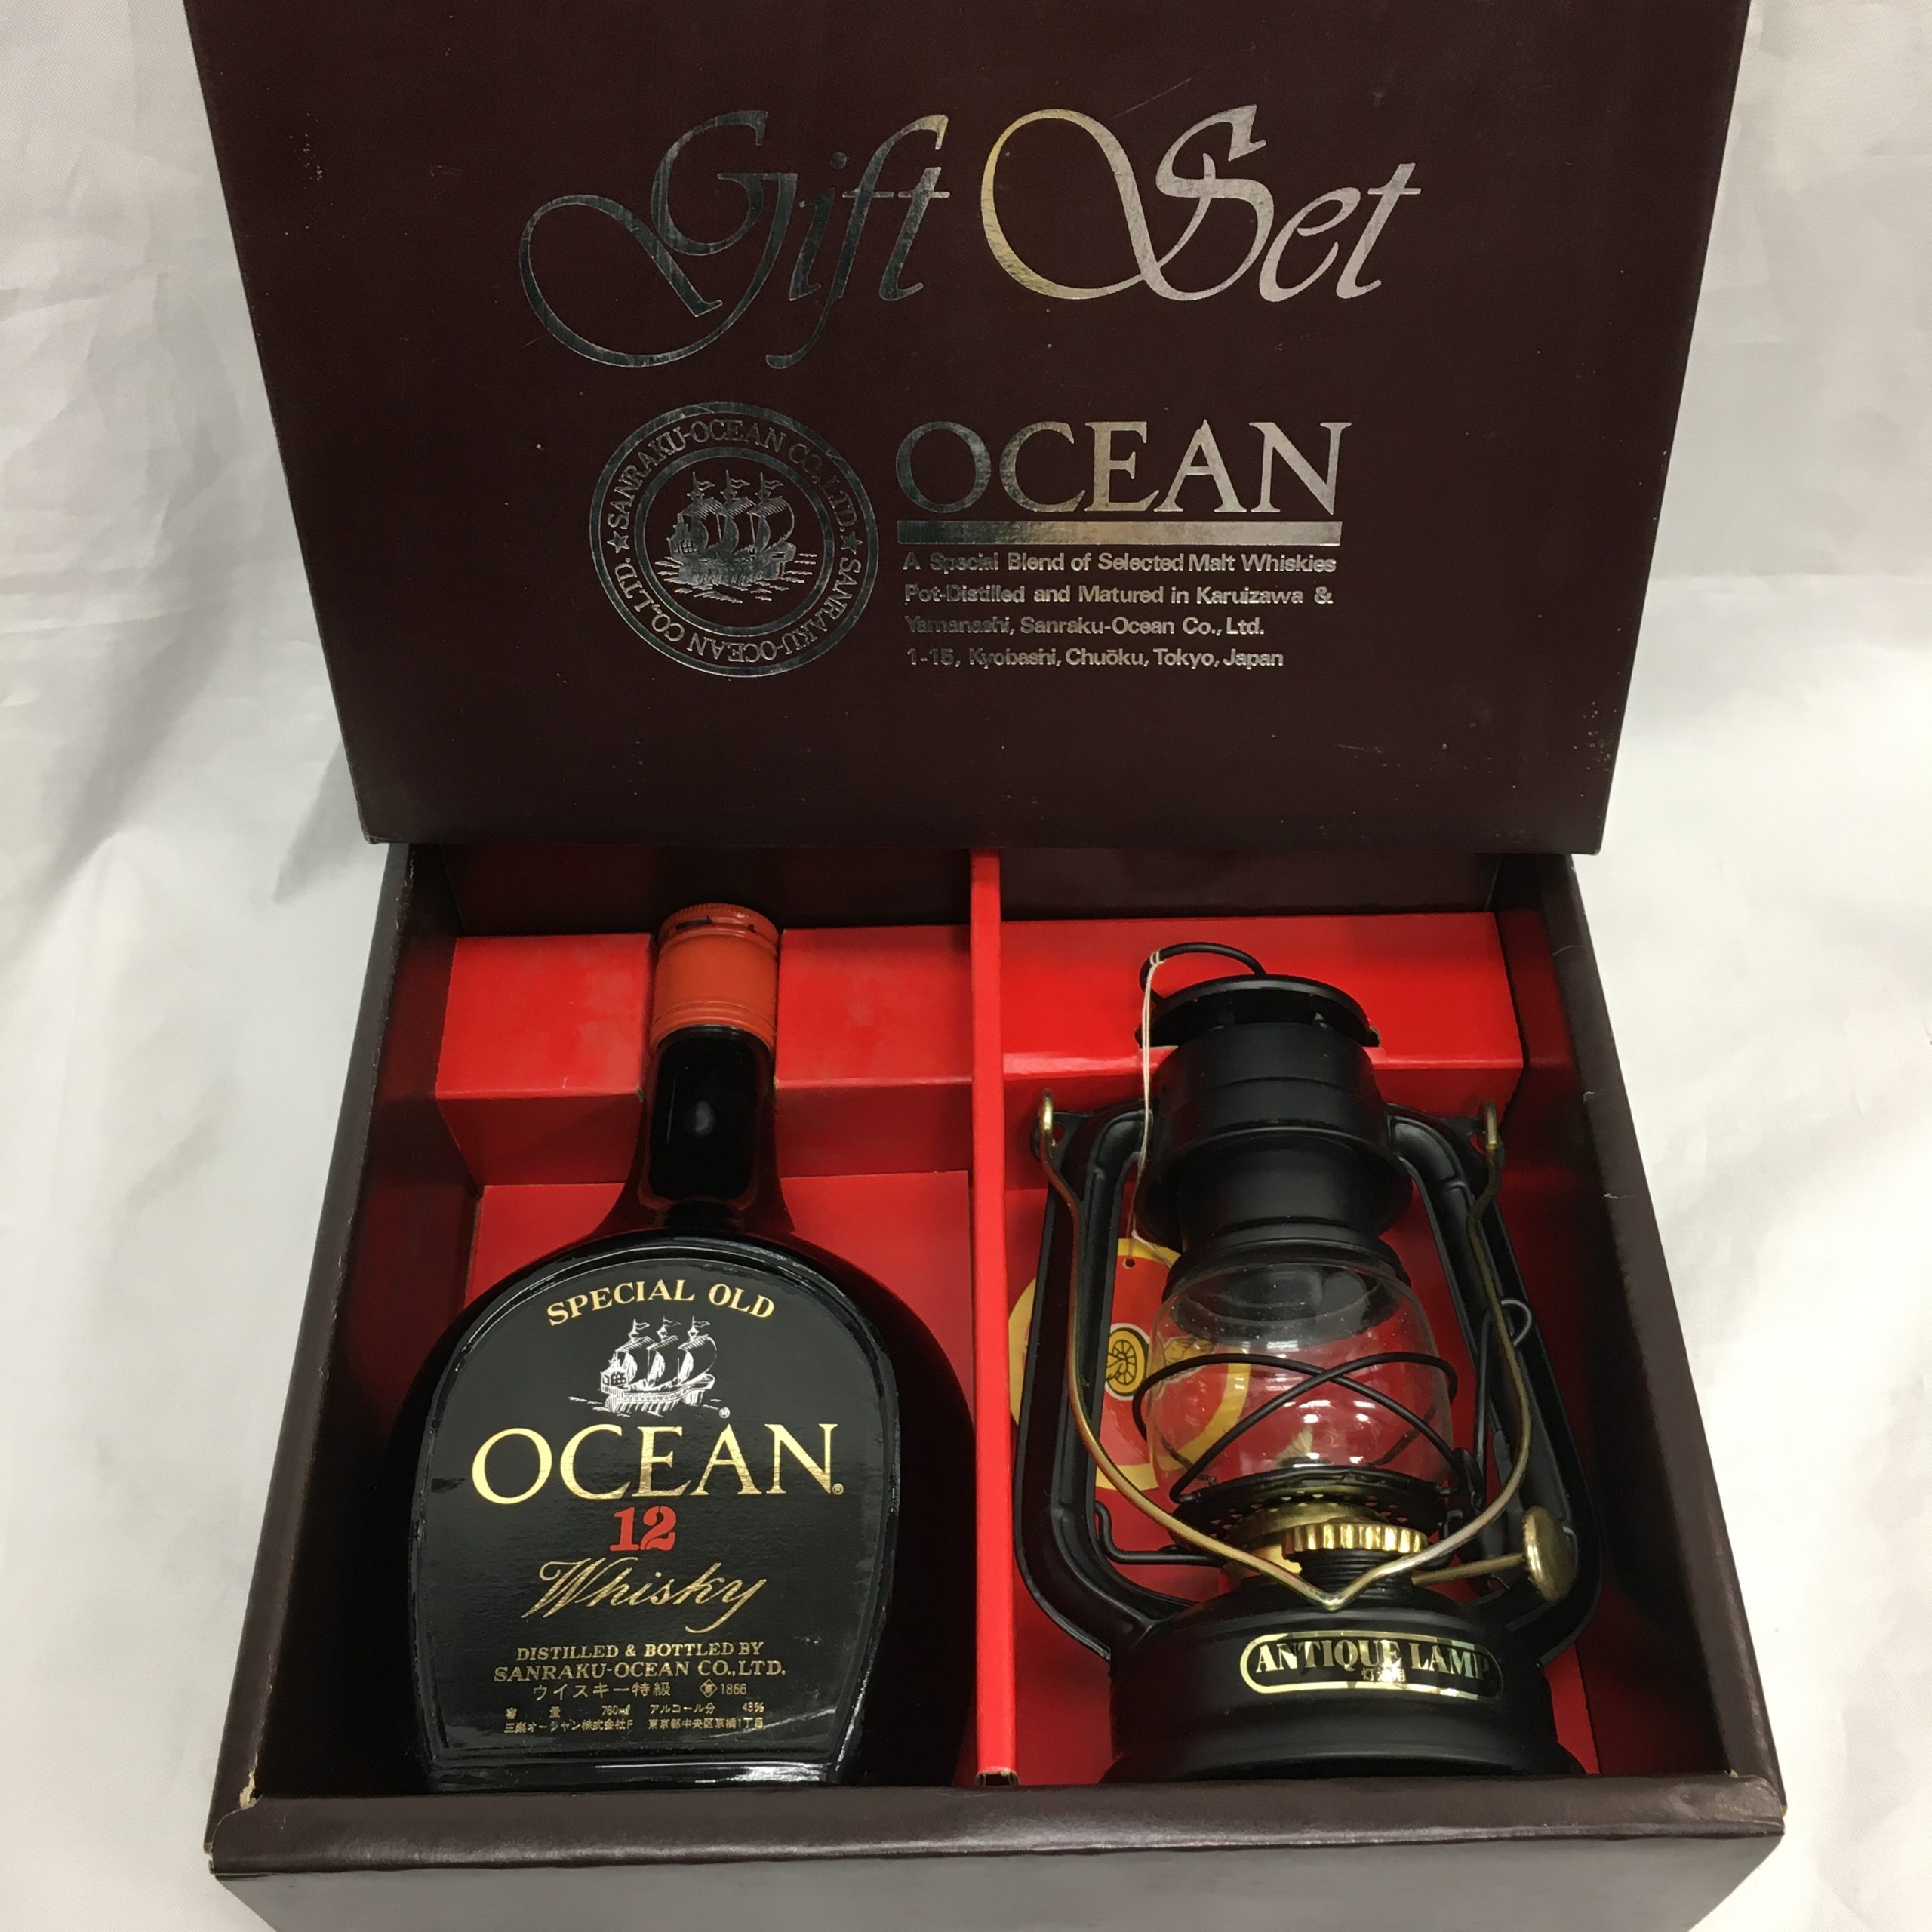 特級 オーシャン スペシャルオールド 12年 OCEAN SPECIAL OLD 12years old Whisky ギフトセット 石油ランタン付き